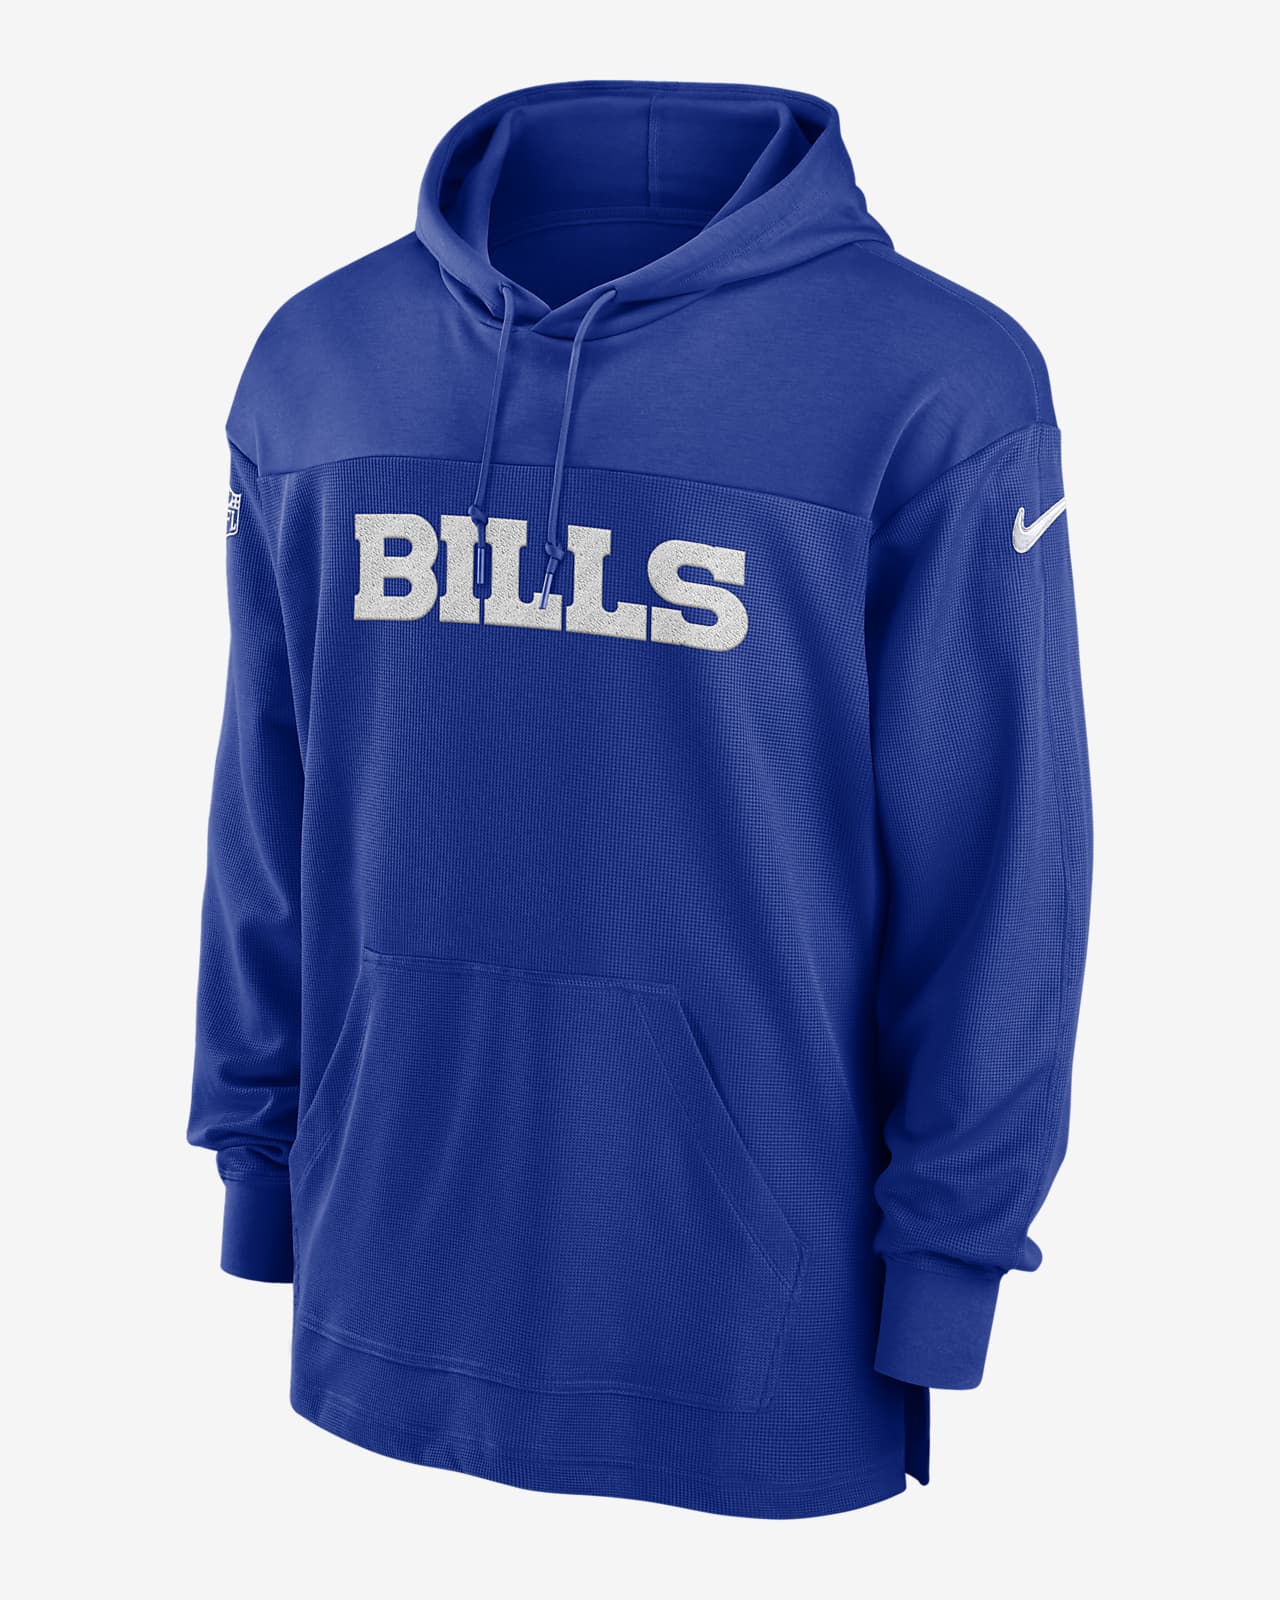 Buffalo Bills Sideline Men's Nike Dri-FIT NFL Long-Sleeve Hooded Top